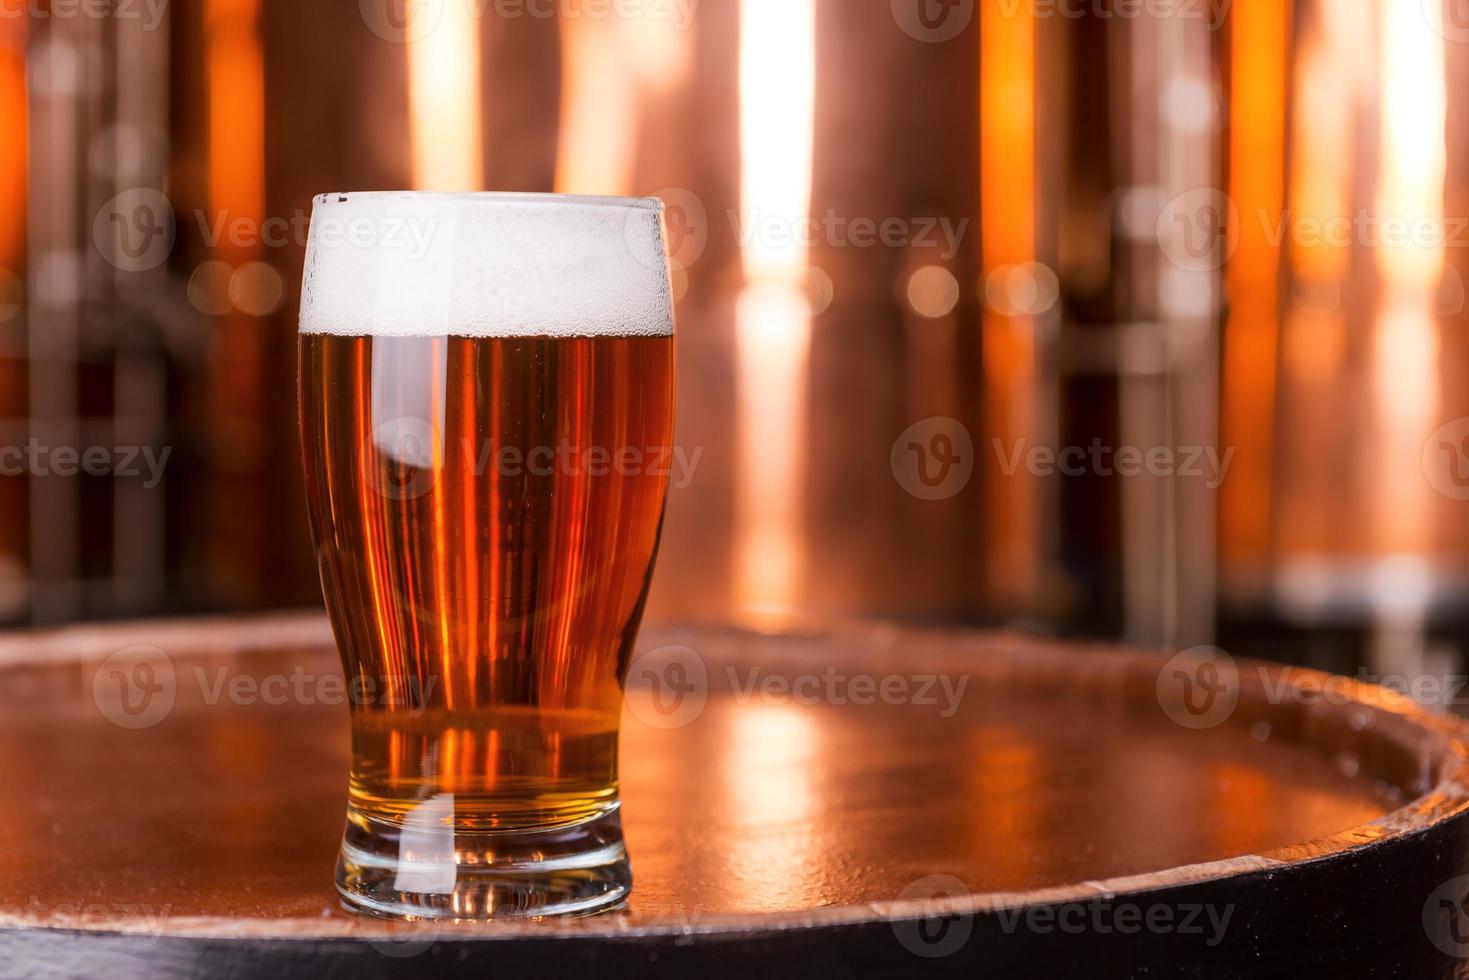 cerveza fresca primer plano de vidrio con cerveza de pie en el barril de madera con recipientes de metal en el fondo foto